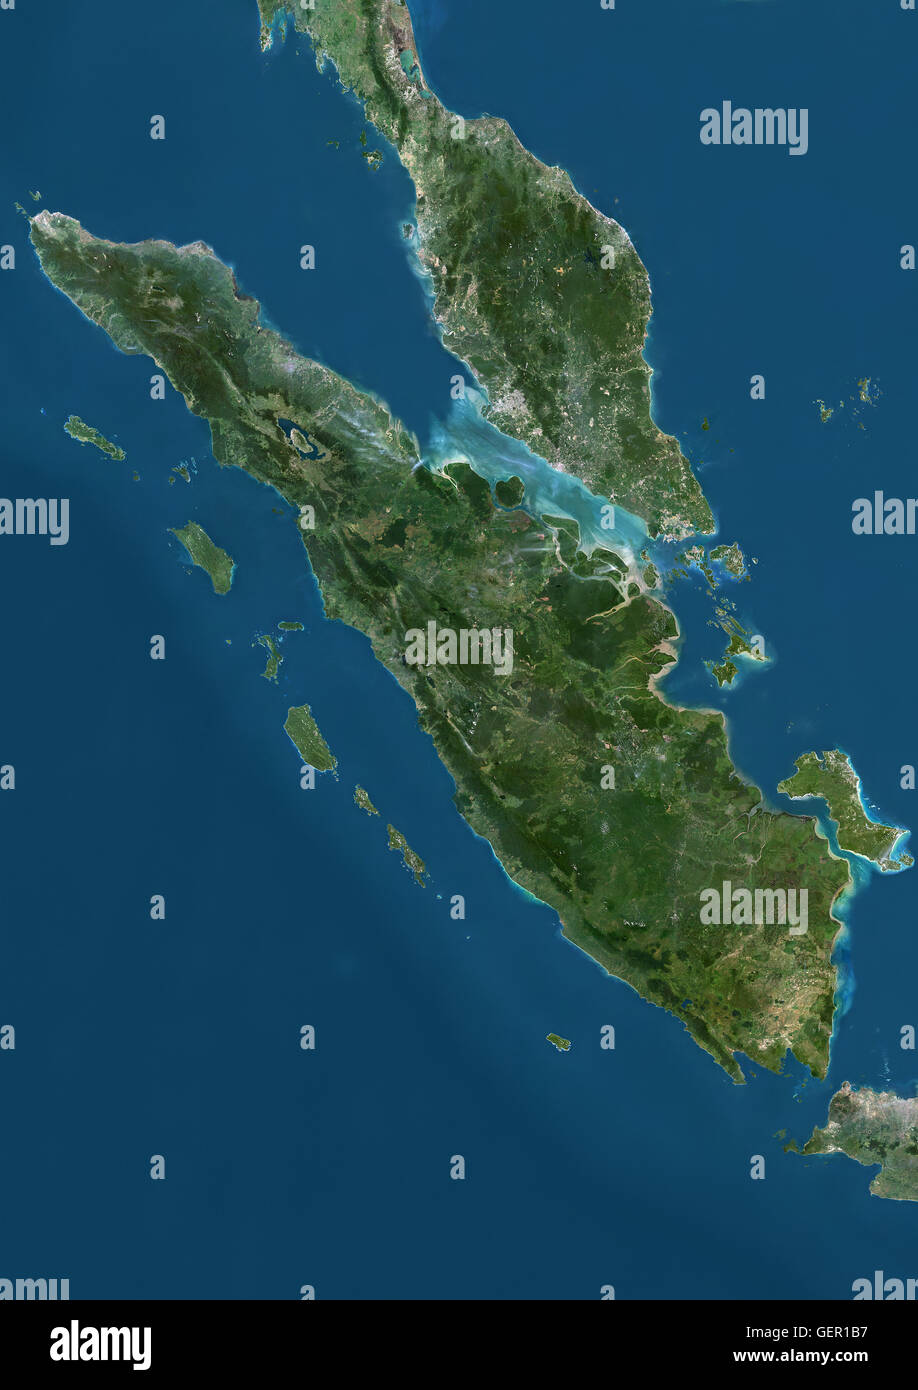 Satellitenansicht von Sumatra, Malaysia und Singapur. Dieses Bild wurde aus Daten von Landsat-Satelliten erworben erstellt. Stockfoto